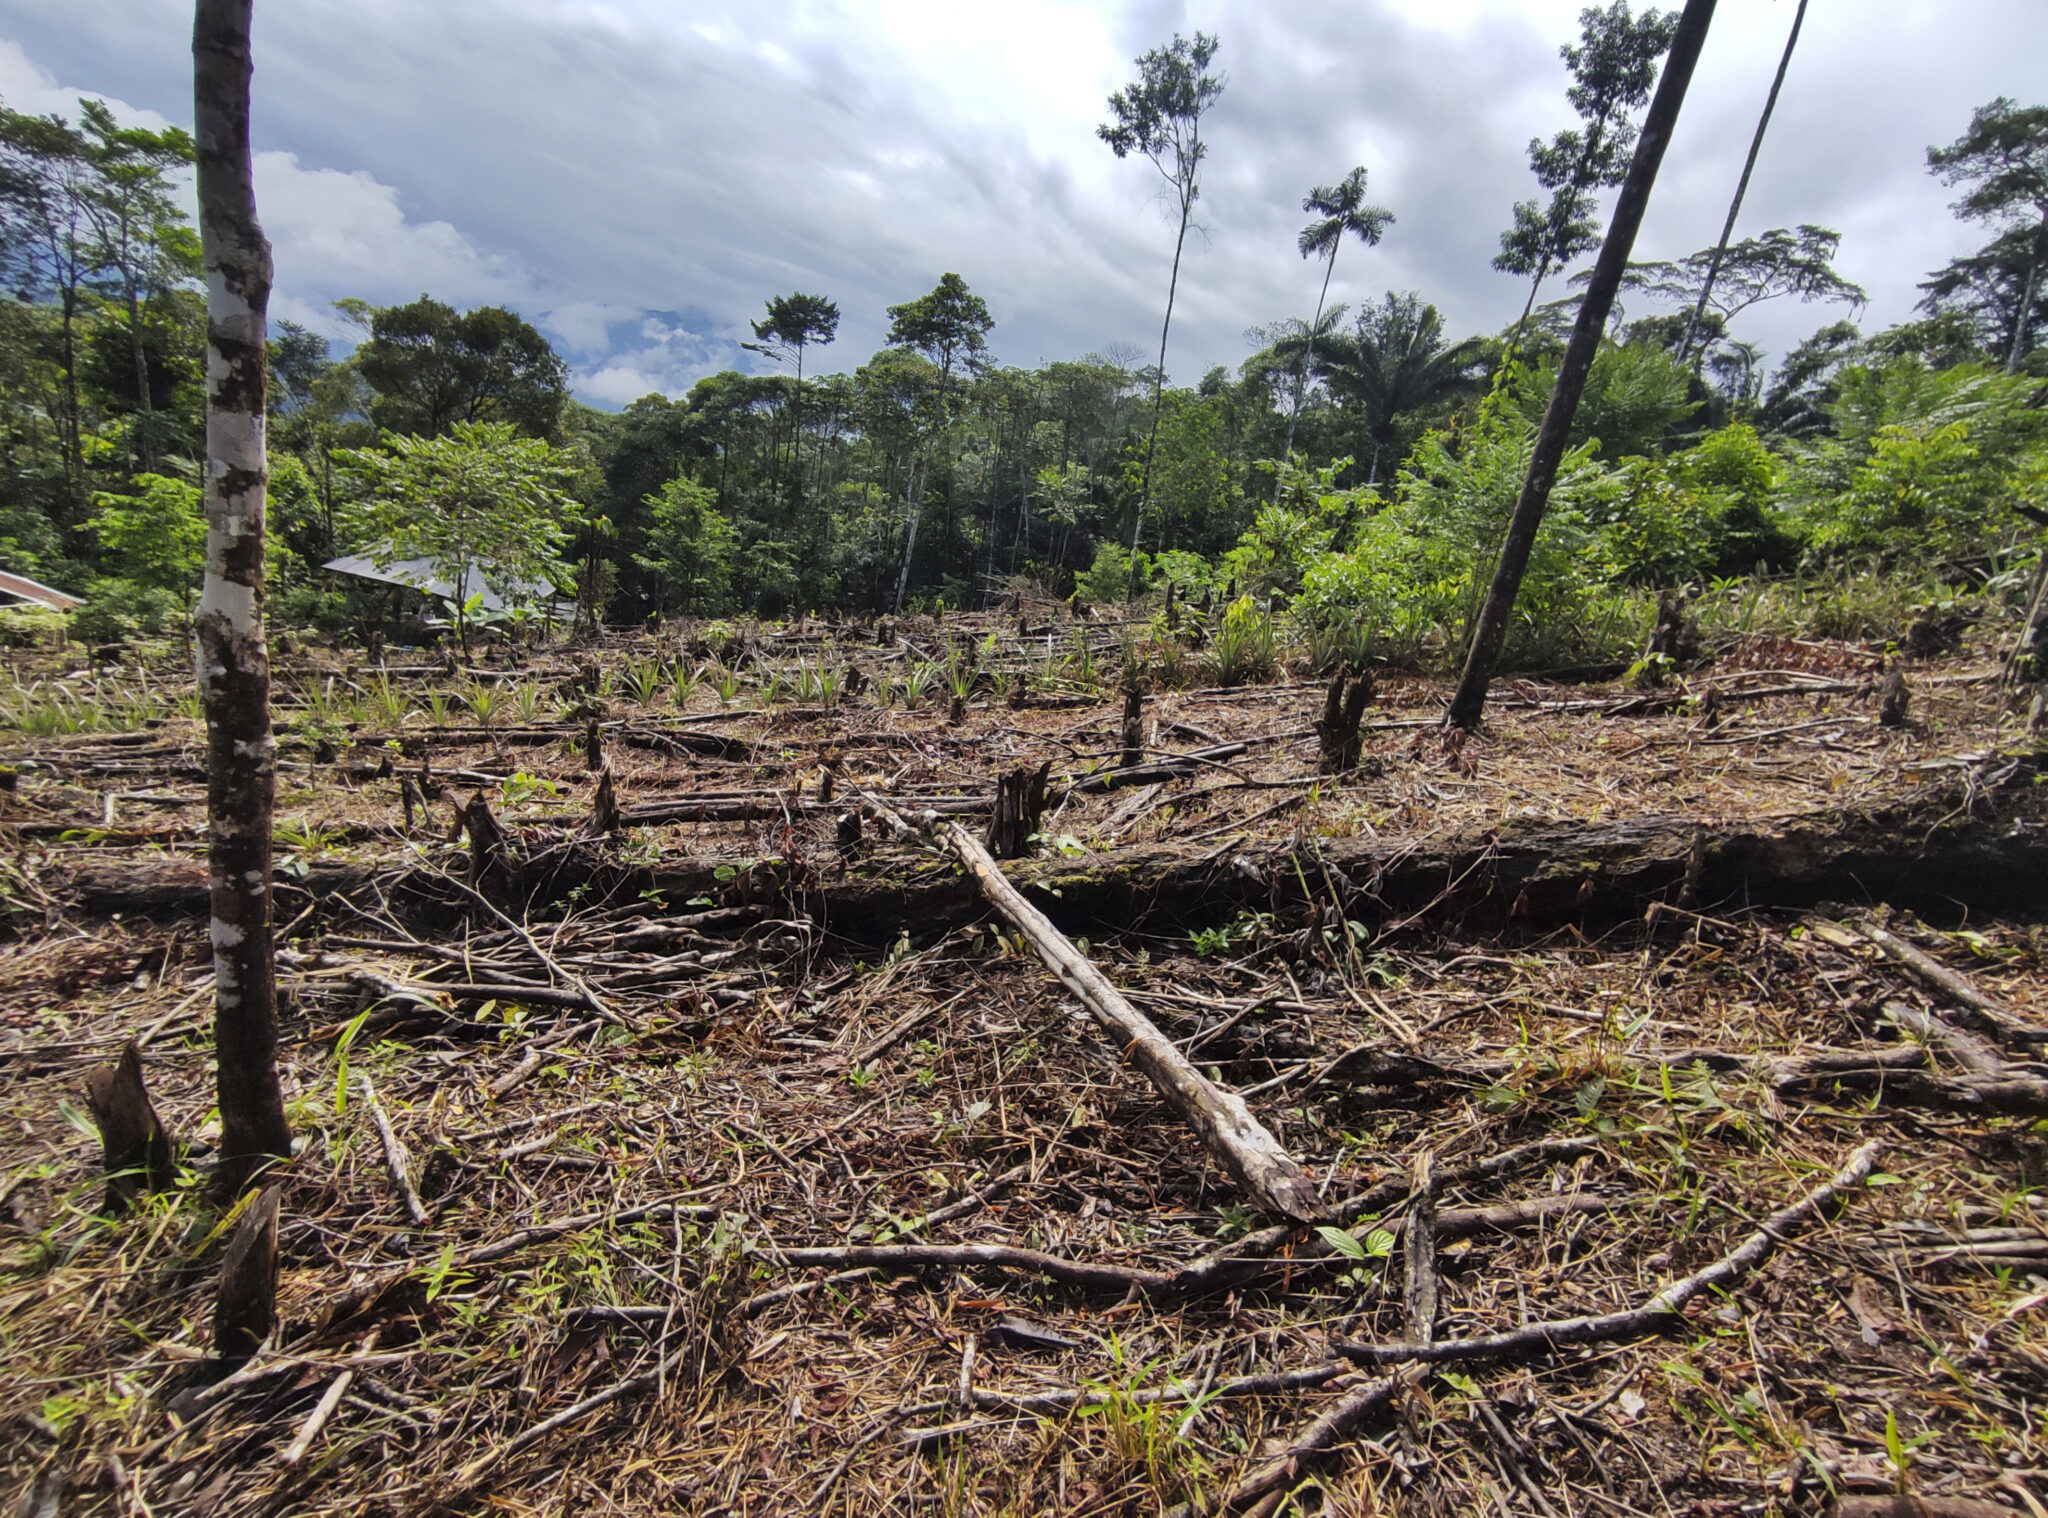 Un fragmento de selva talada, en la andinoamazonía colombiana, en el departamento de Putumayo. Foto: Natalia Pedraza.